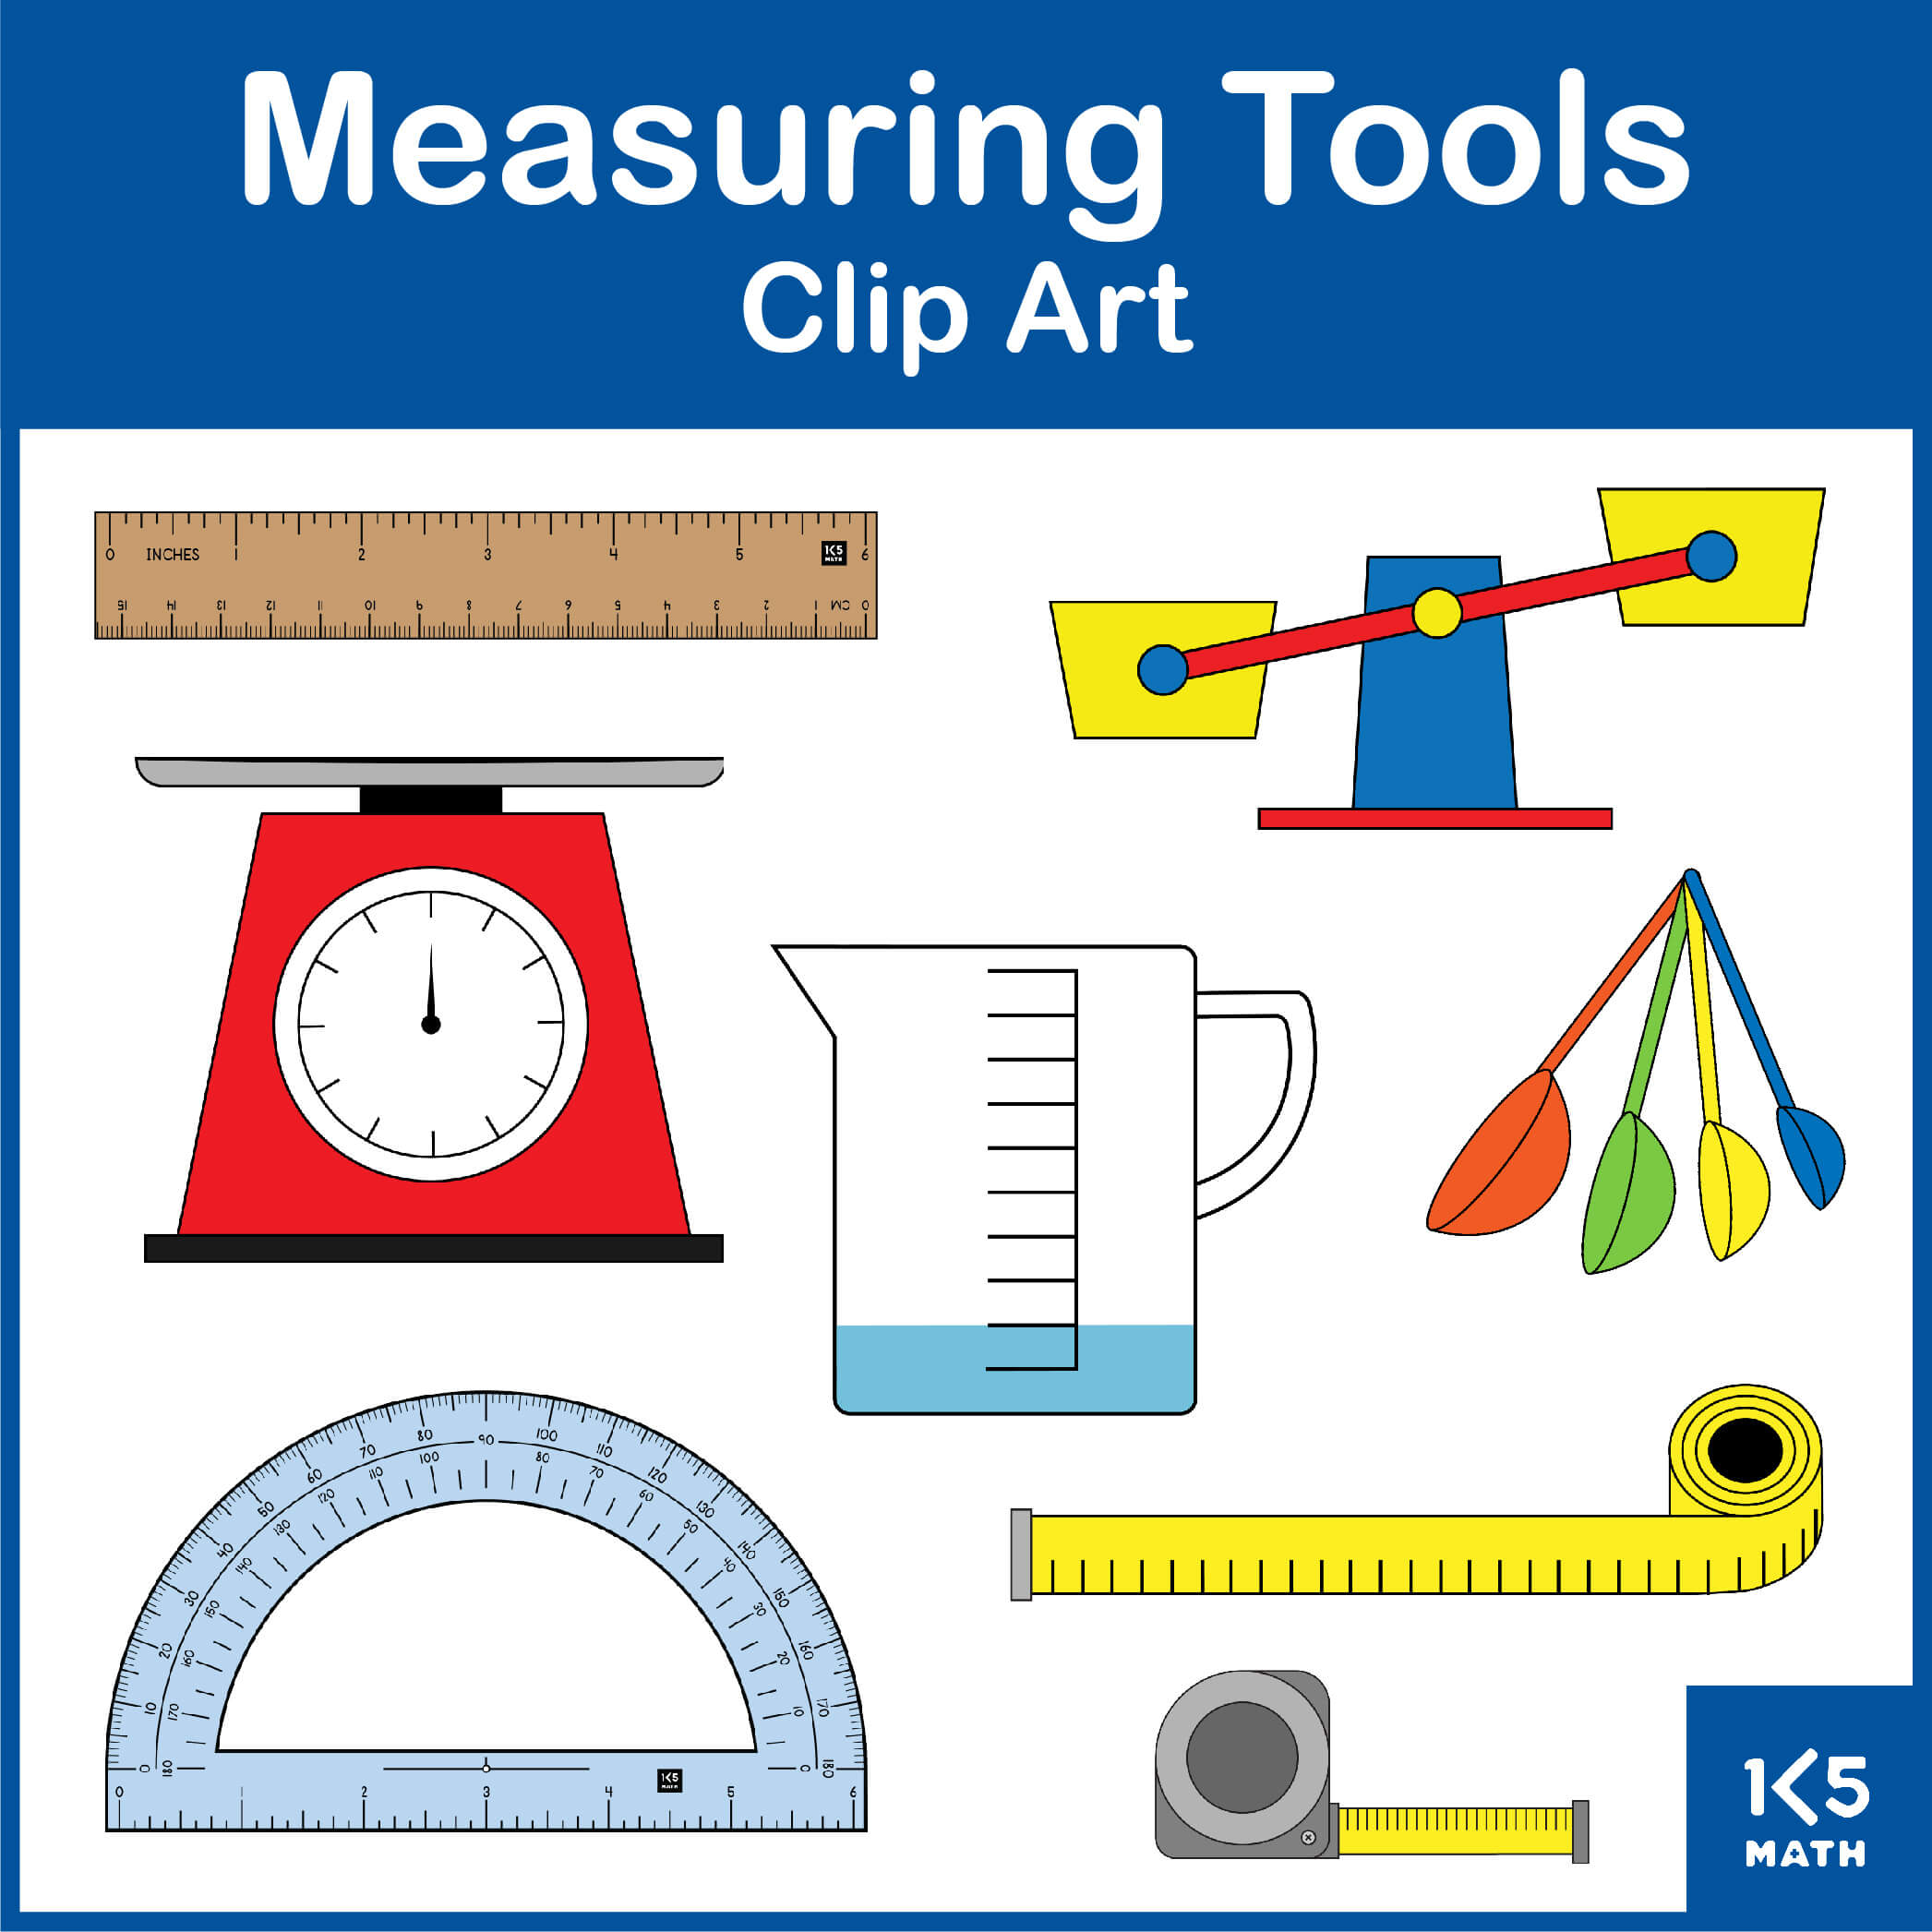 14 measuring cup clip art